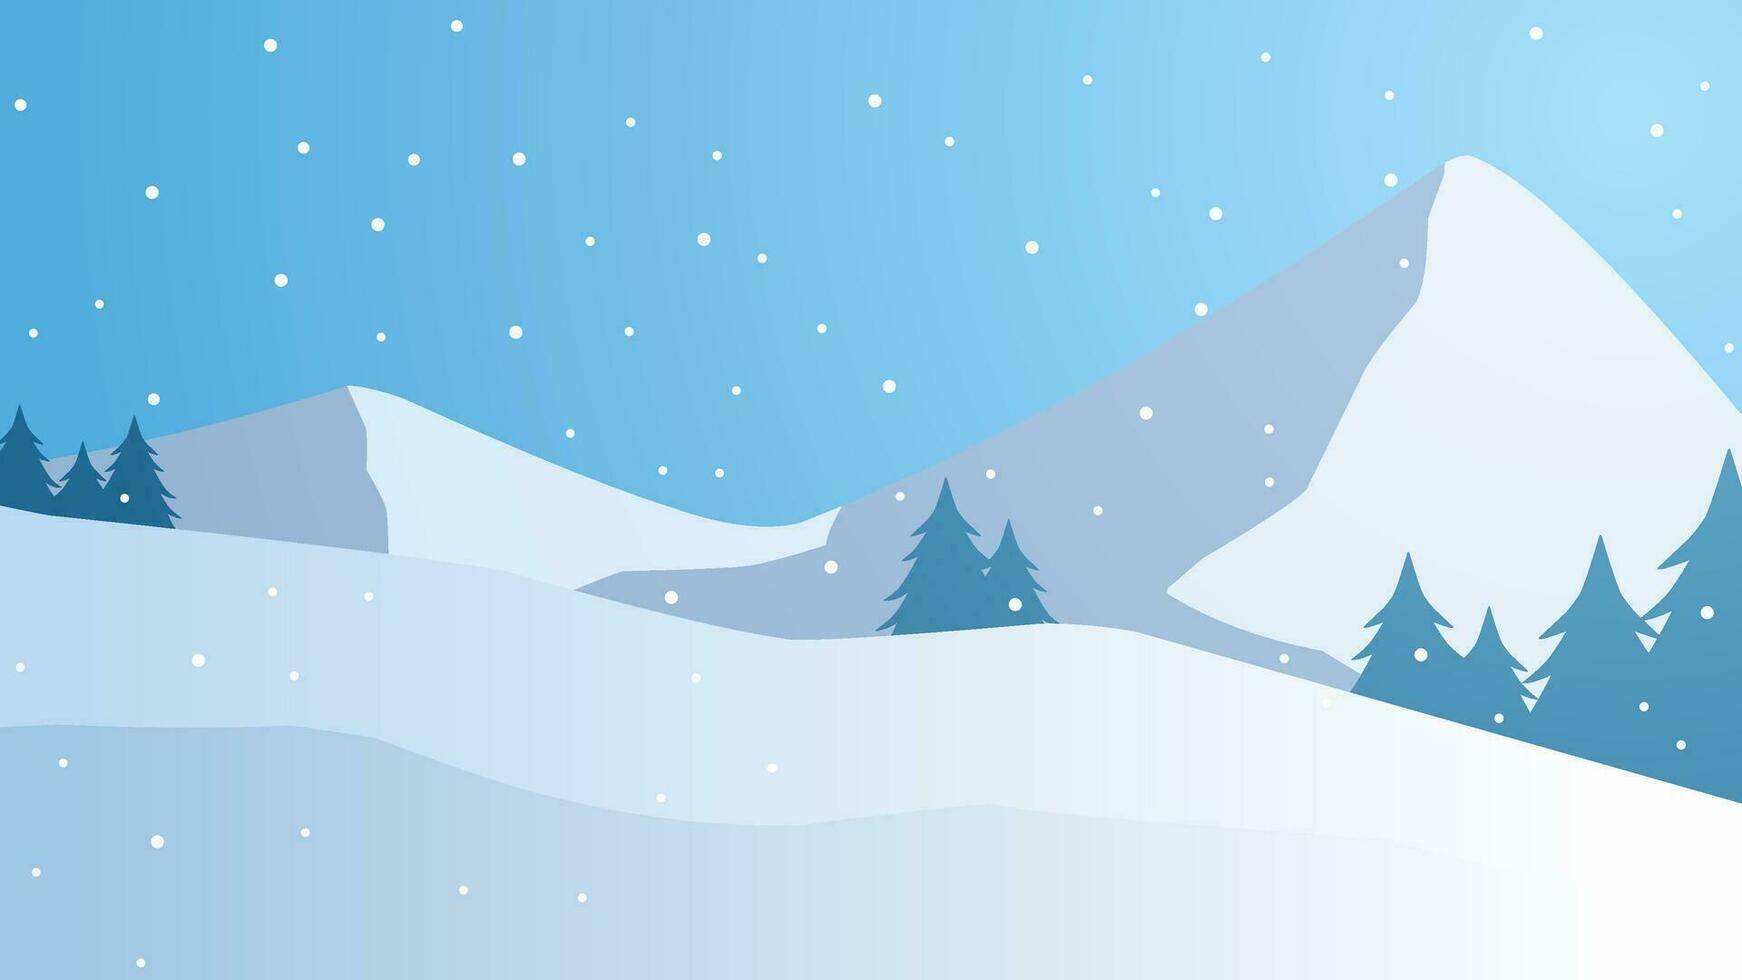 schneebedeckt Berg Landschaft Vektor Illustration. Landschaft von Schnee bedeckt Berg im Winter Jahreszeit. Winter Berg Panorama zum Hintergrund, Hintergrund oder Illustration